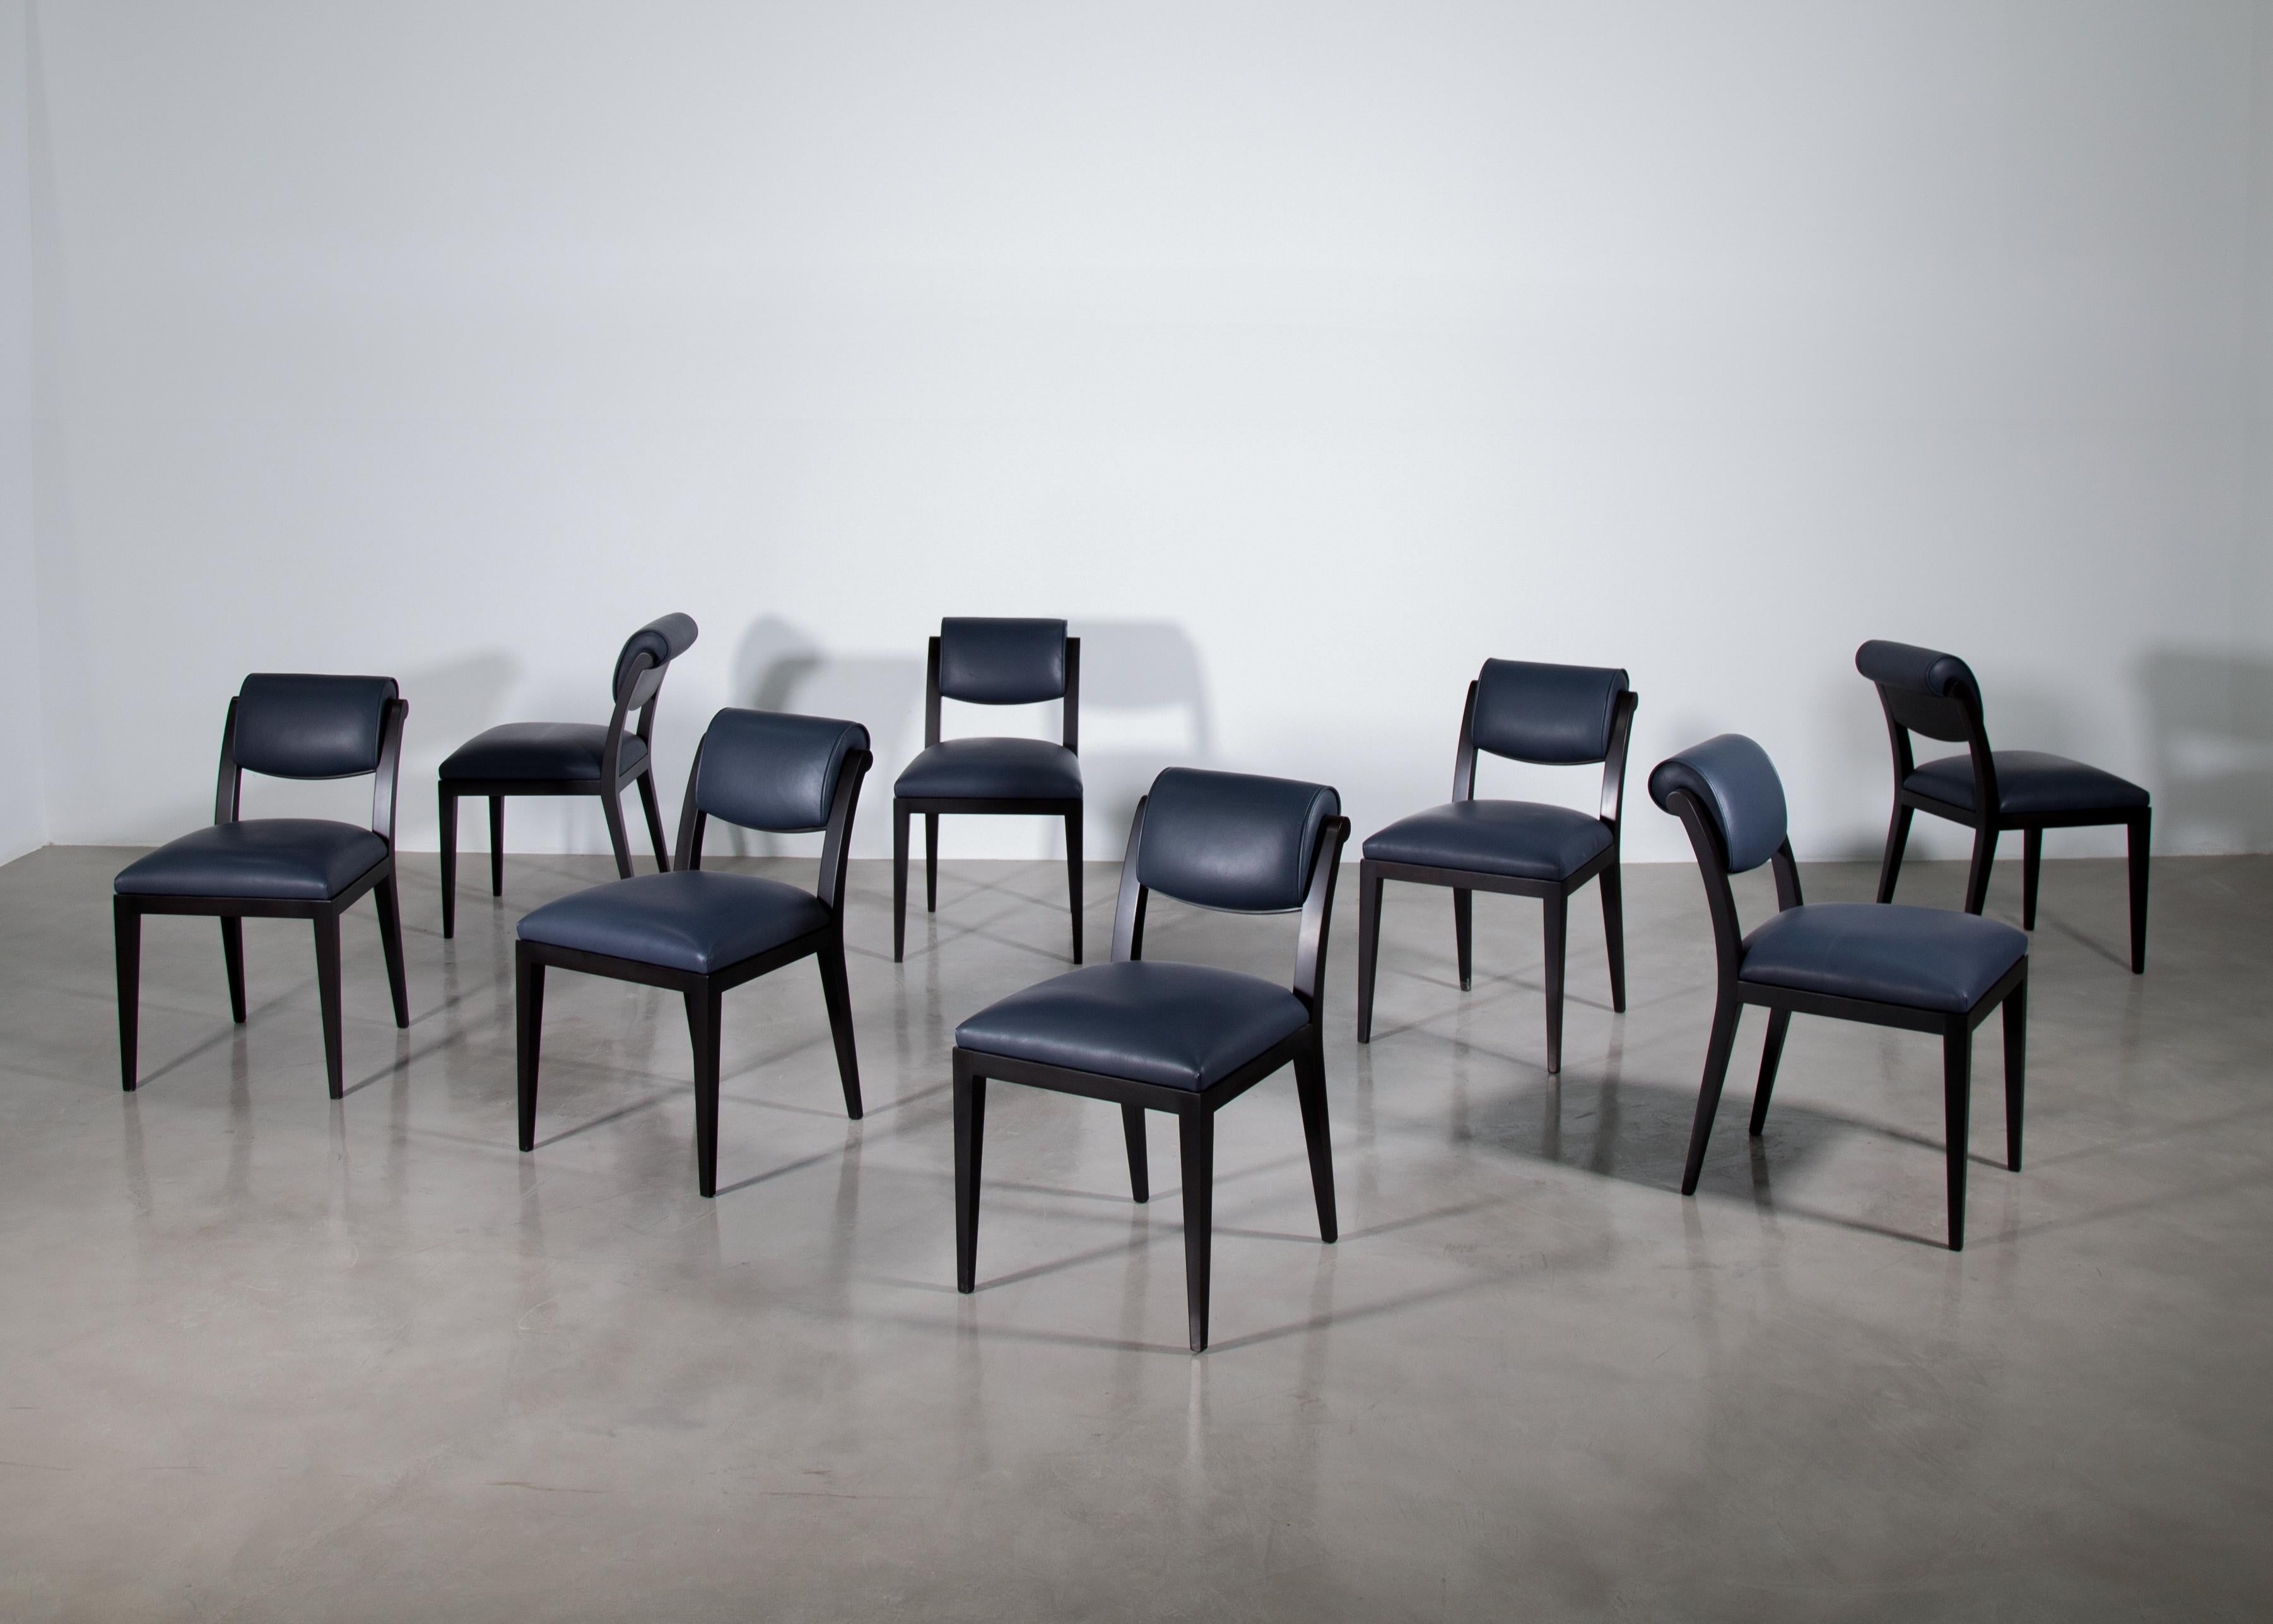 La chaise de salle à manger Gianni de Costantini s'inspire des maîtres de l'Art déco du début du 20e siècle et présente un cadre léger avec un dossier à volutes. 

Cet ensemble de 8 anciens modèles de salle d'exposition est en palissandre argentin